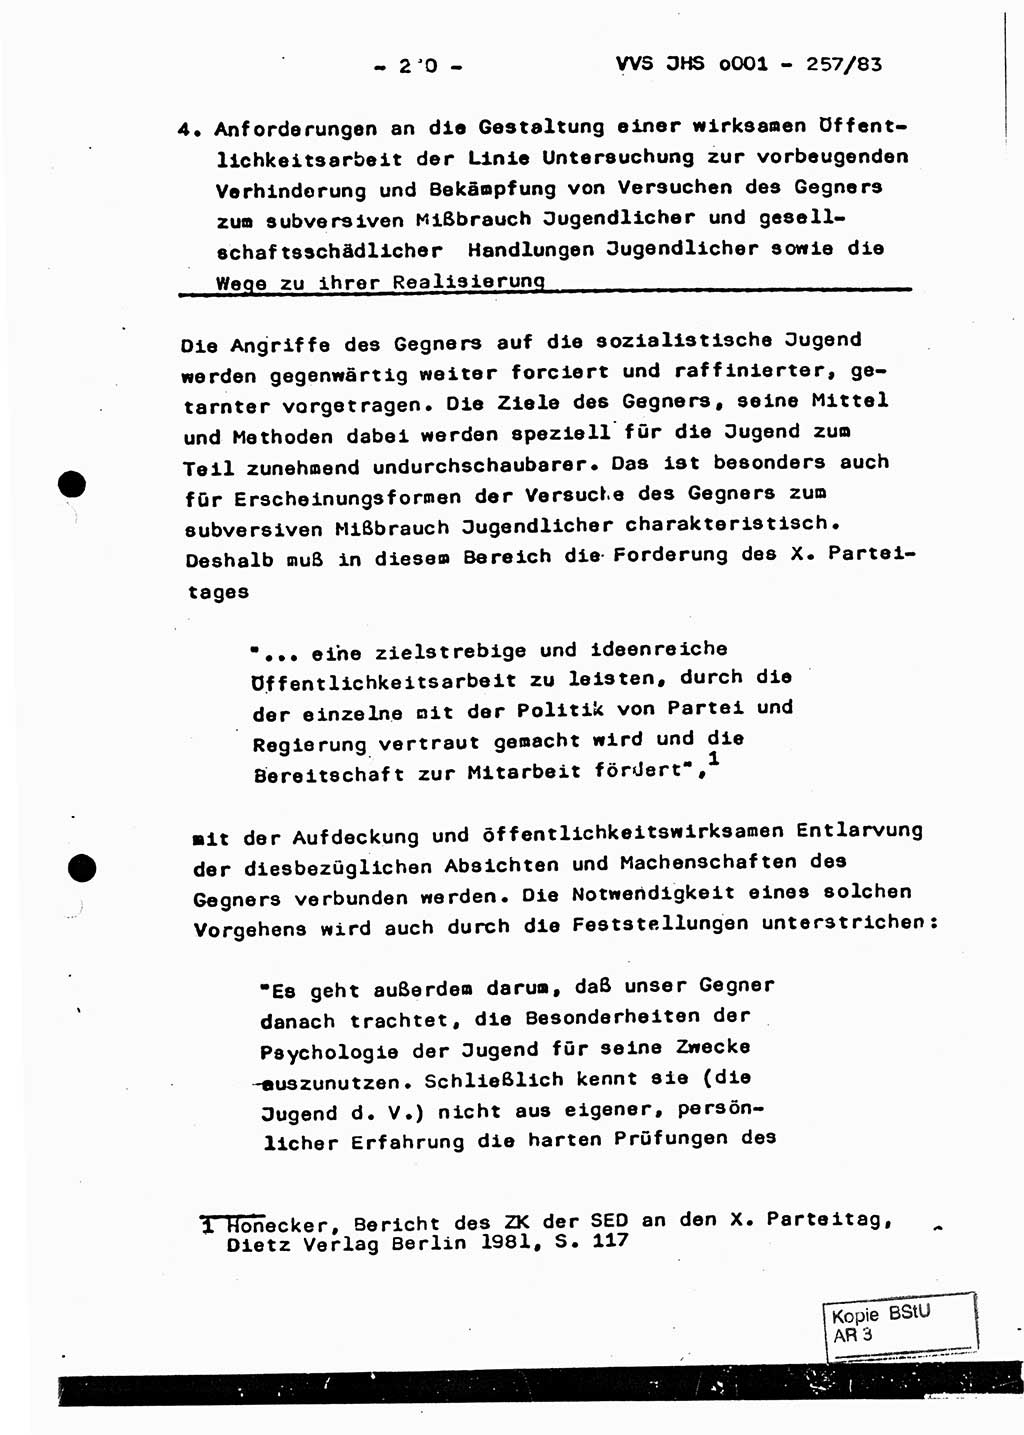 Dissertation, Oberst Helmut Lubas (BV Mdg.), Oberstleutnant Manfred Eschberger (HA IX), Oberleutnant Hans-Jürgen Ludwig (JHS), Ministerium für Staatssicherheit (MfS) [Deutsche Demokratische Republik (DDR)], Juristische Hochschule (JHS), Vertrauliche Verschlußsache (VVS) o001-257/83, Potsdam 1983, Seite 240 (Diss. MfS DDR JHS VVS o001-257/83 1983, S. 240)